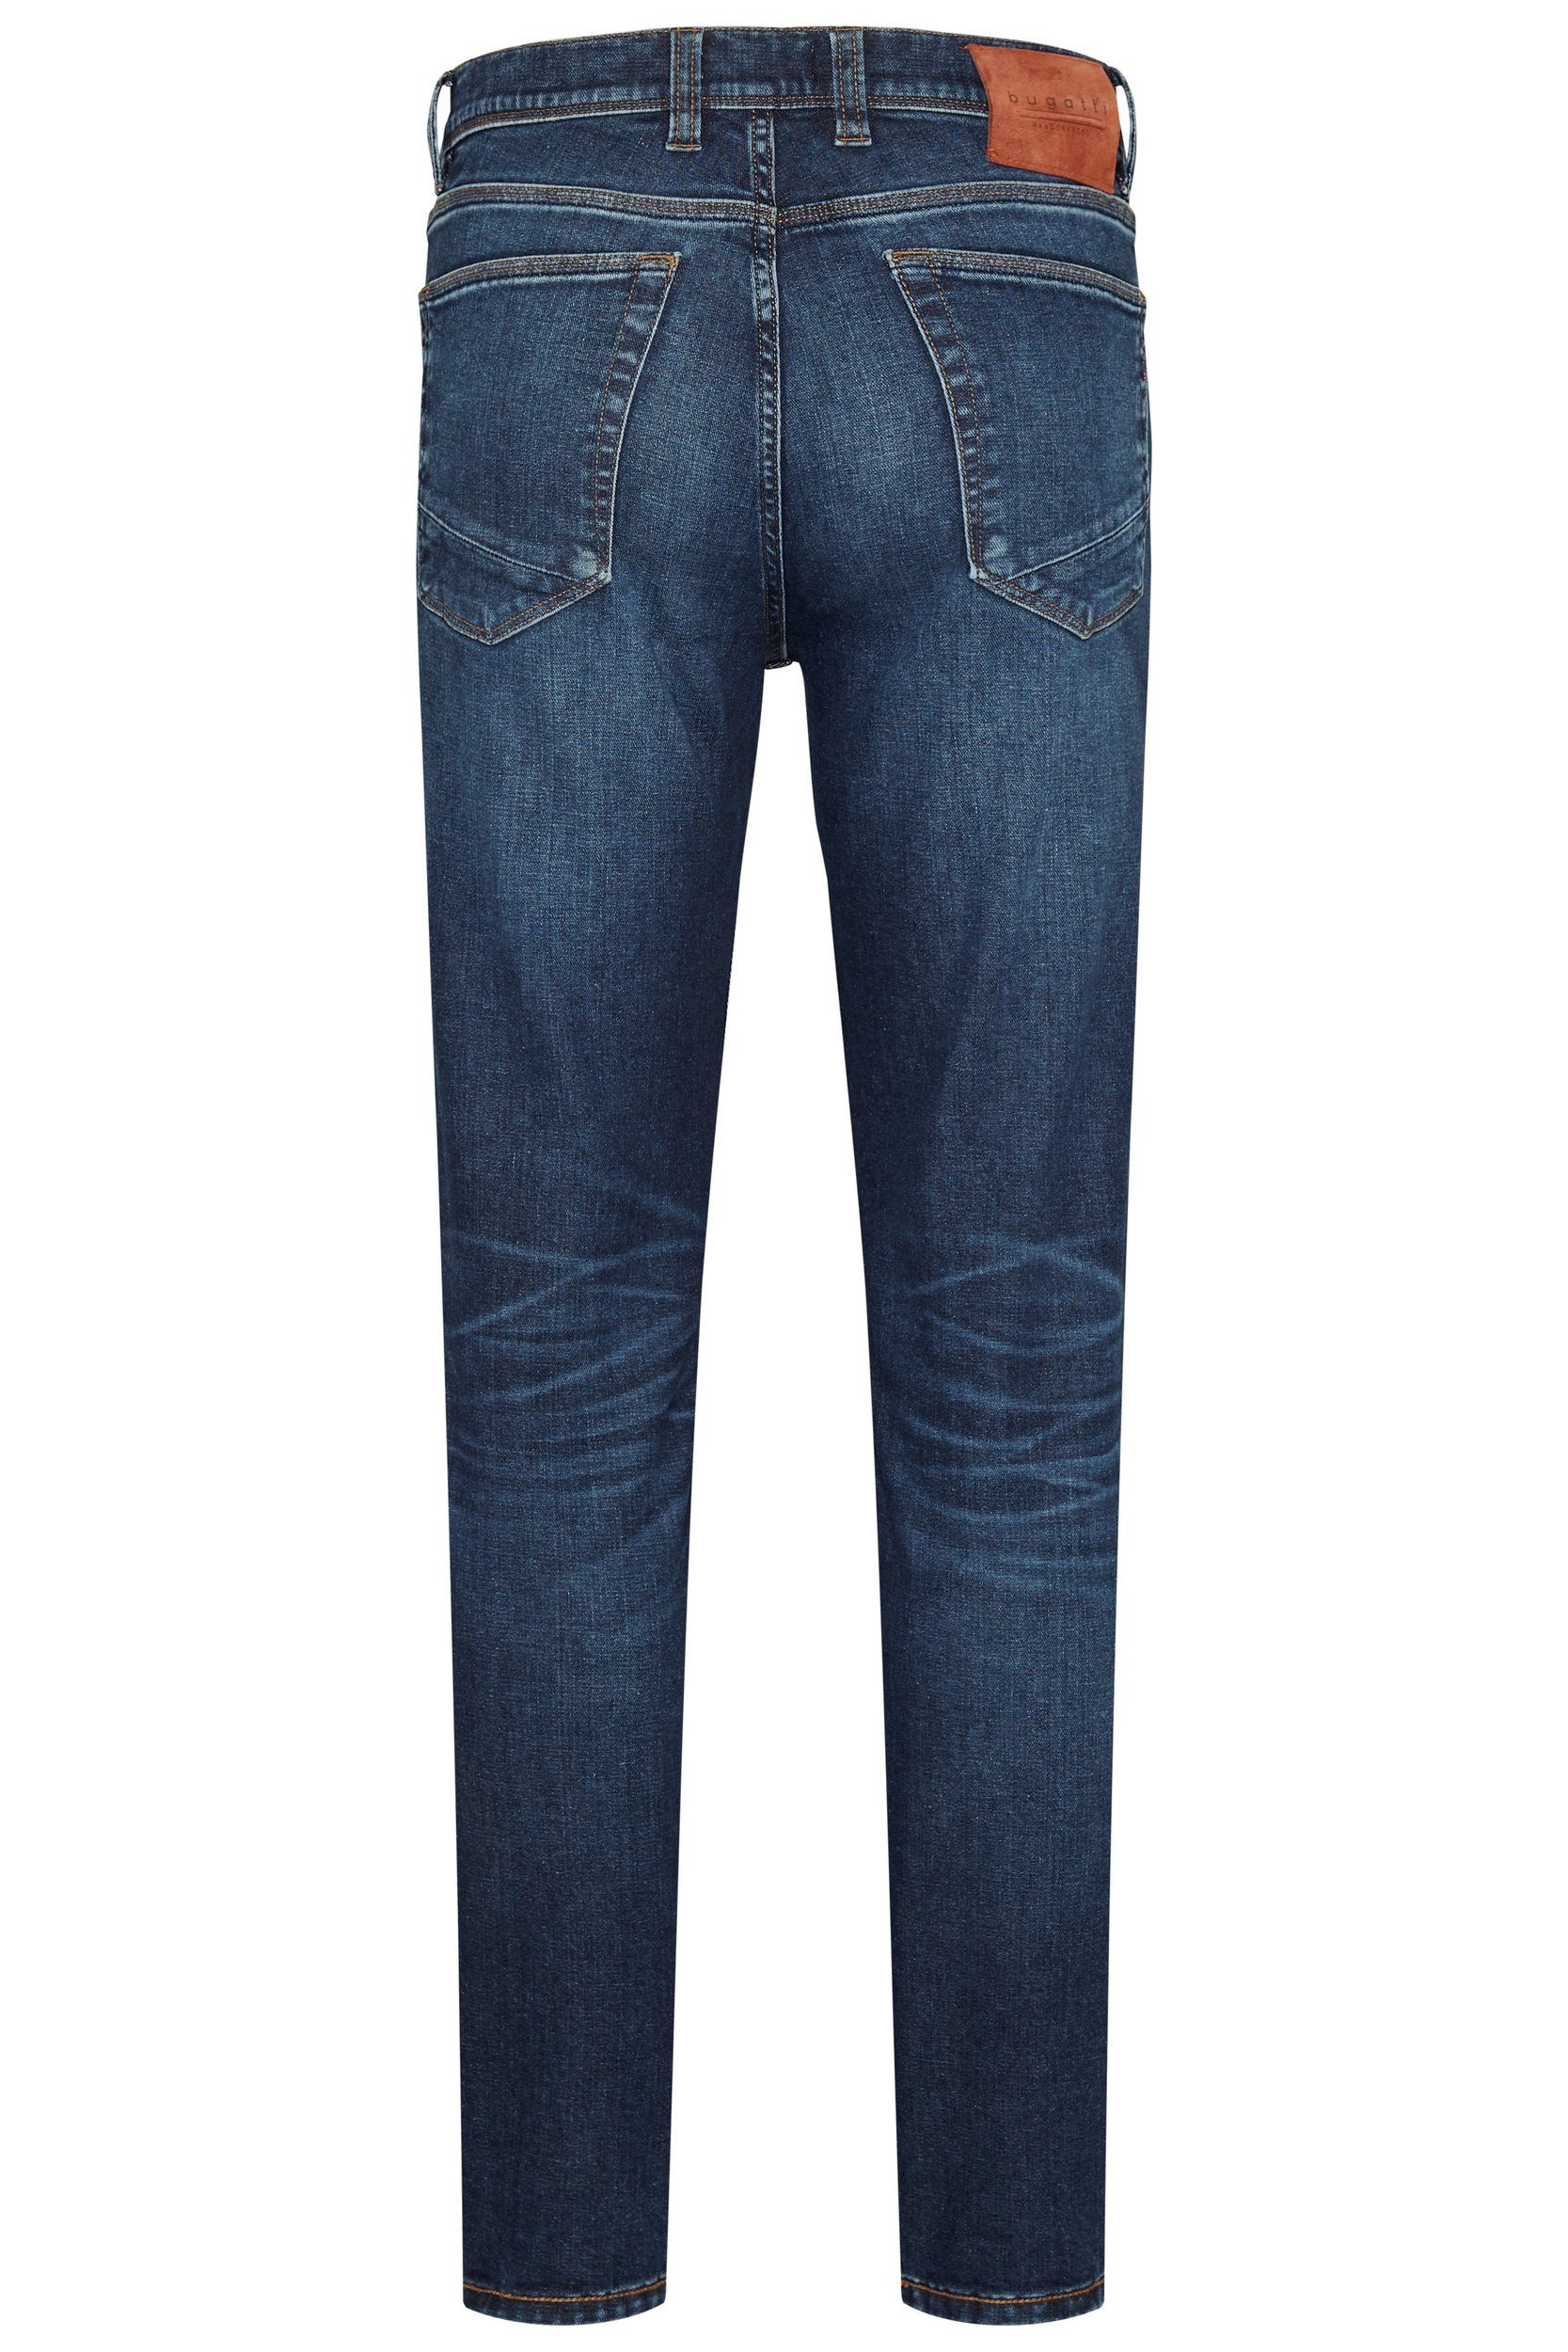 Haptik mit 5-Pocket-Jeans weicher blau besonders bugatti